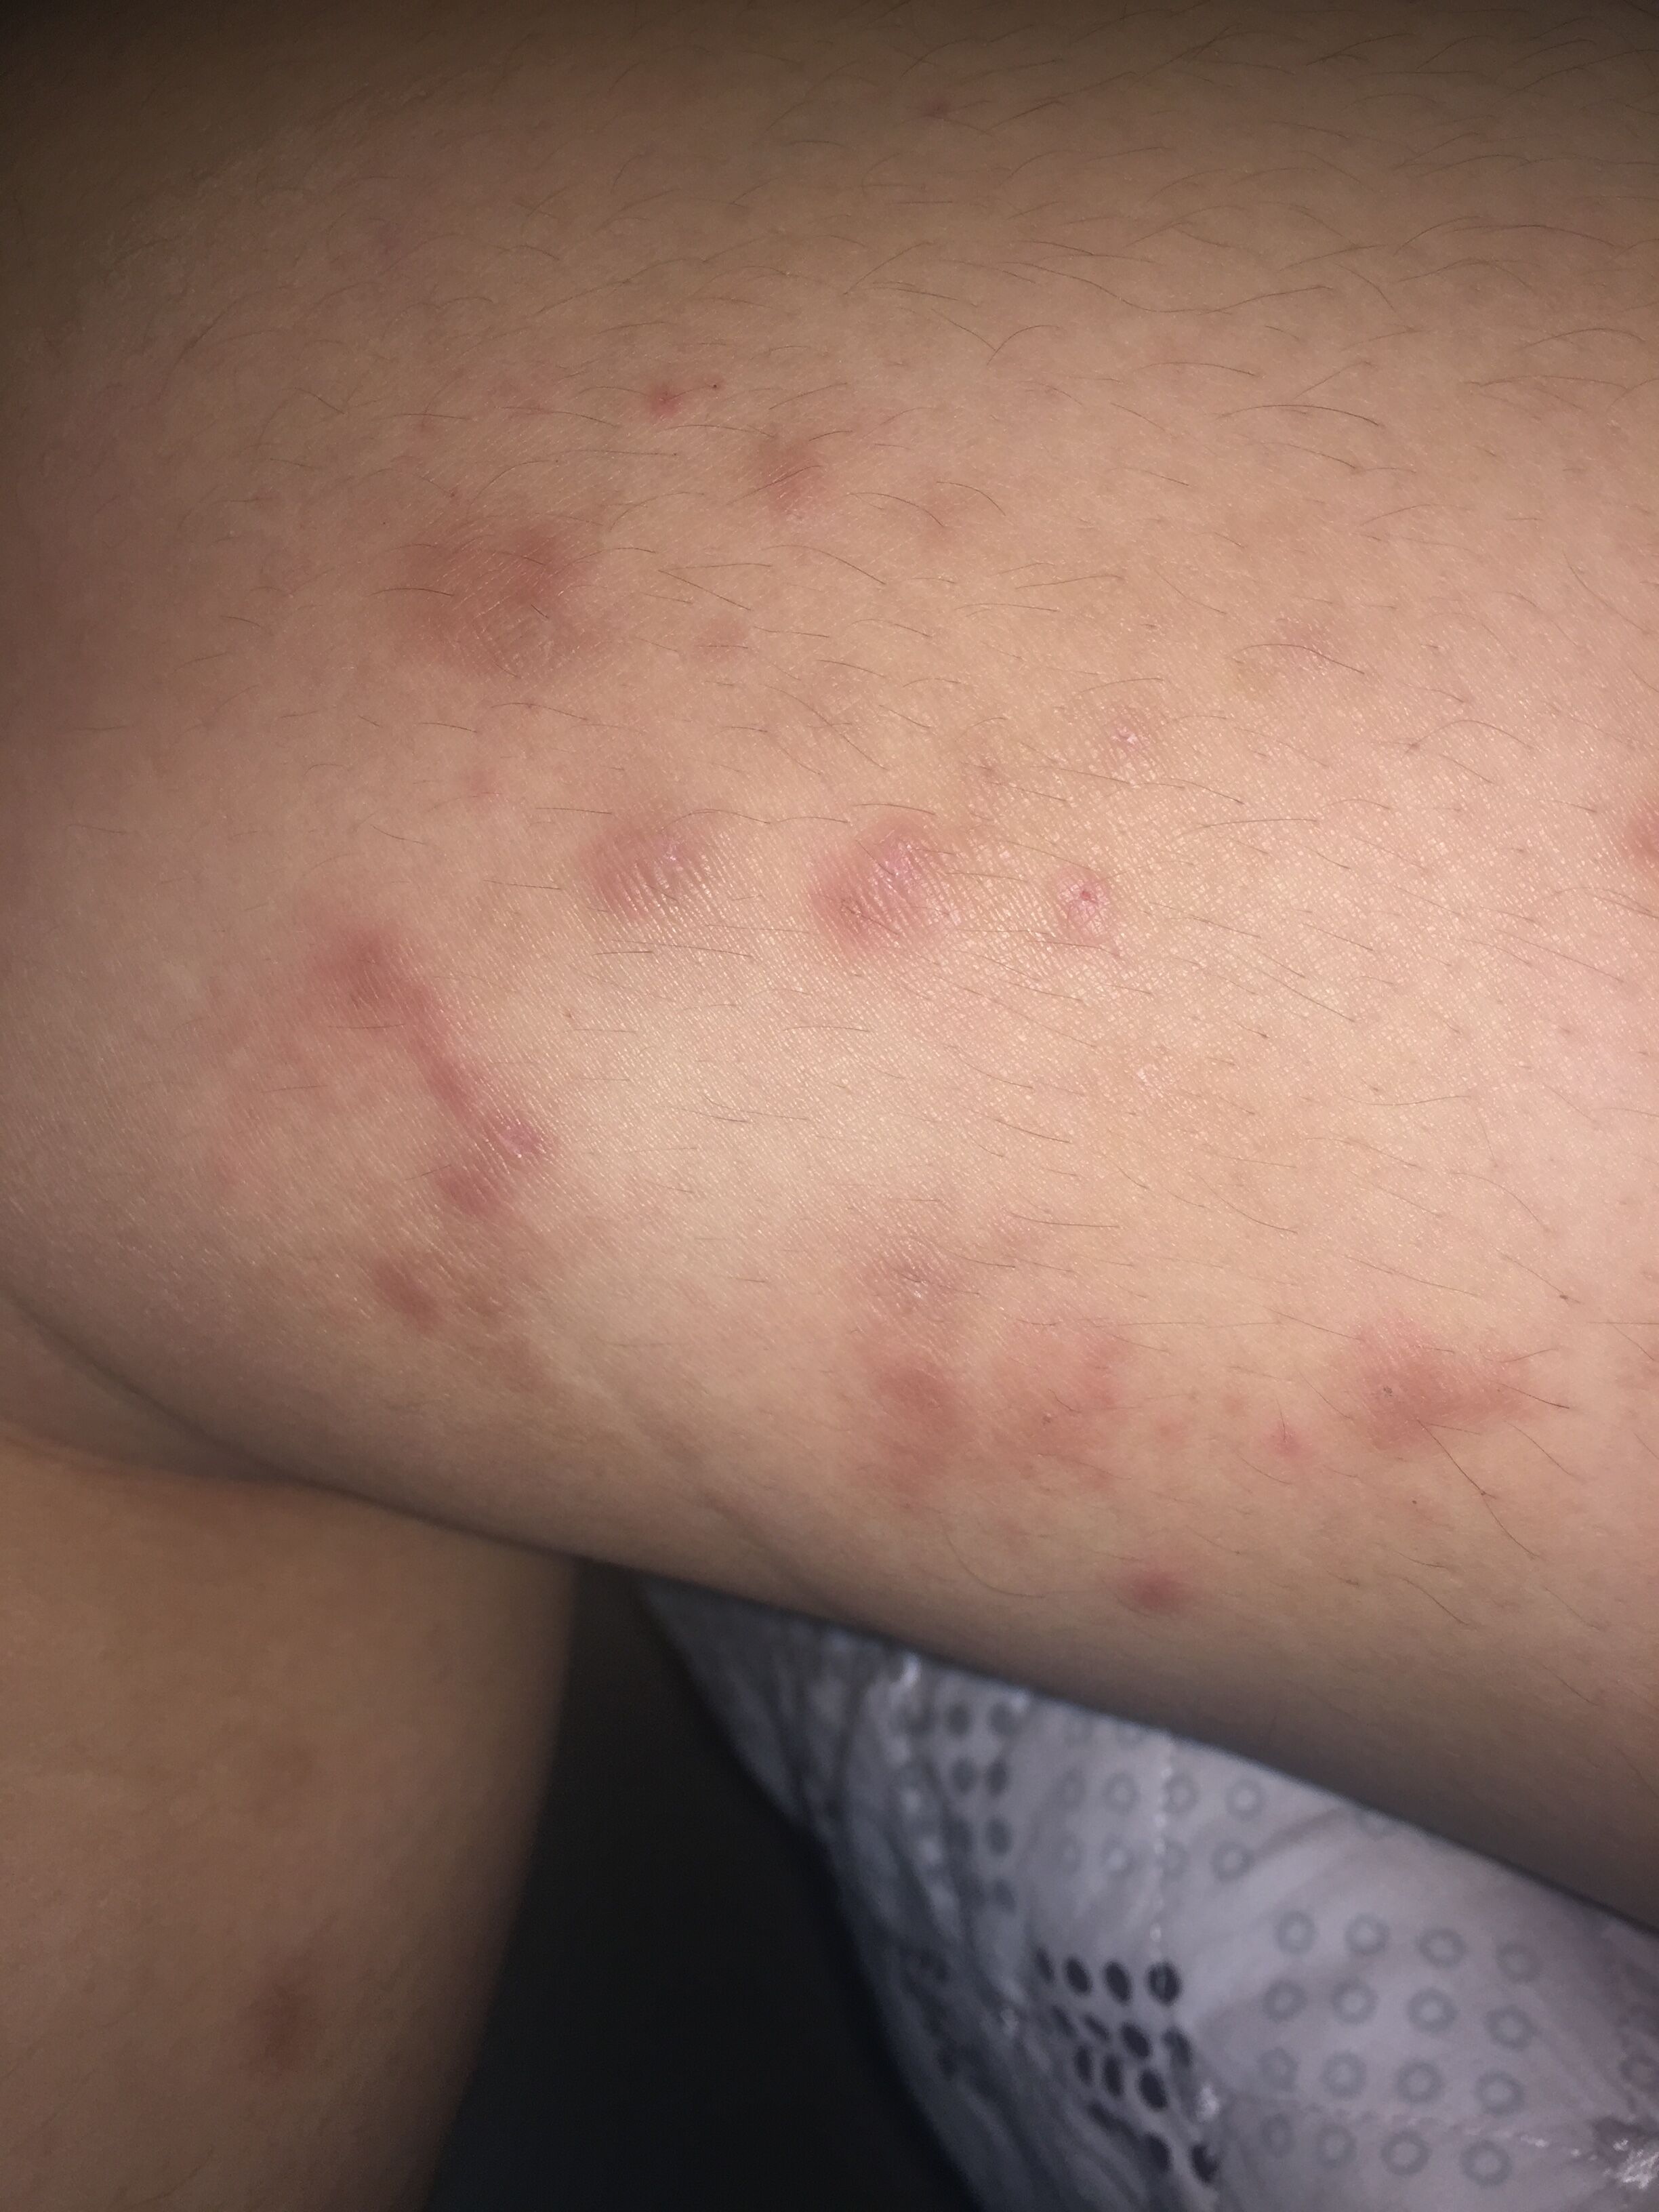 大腿长了很多红色的小痘痘,有一个月左右了.一开始只是很痒,没